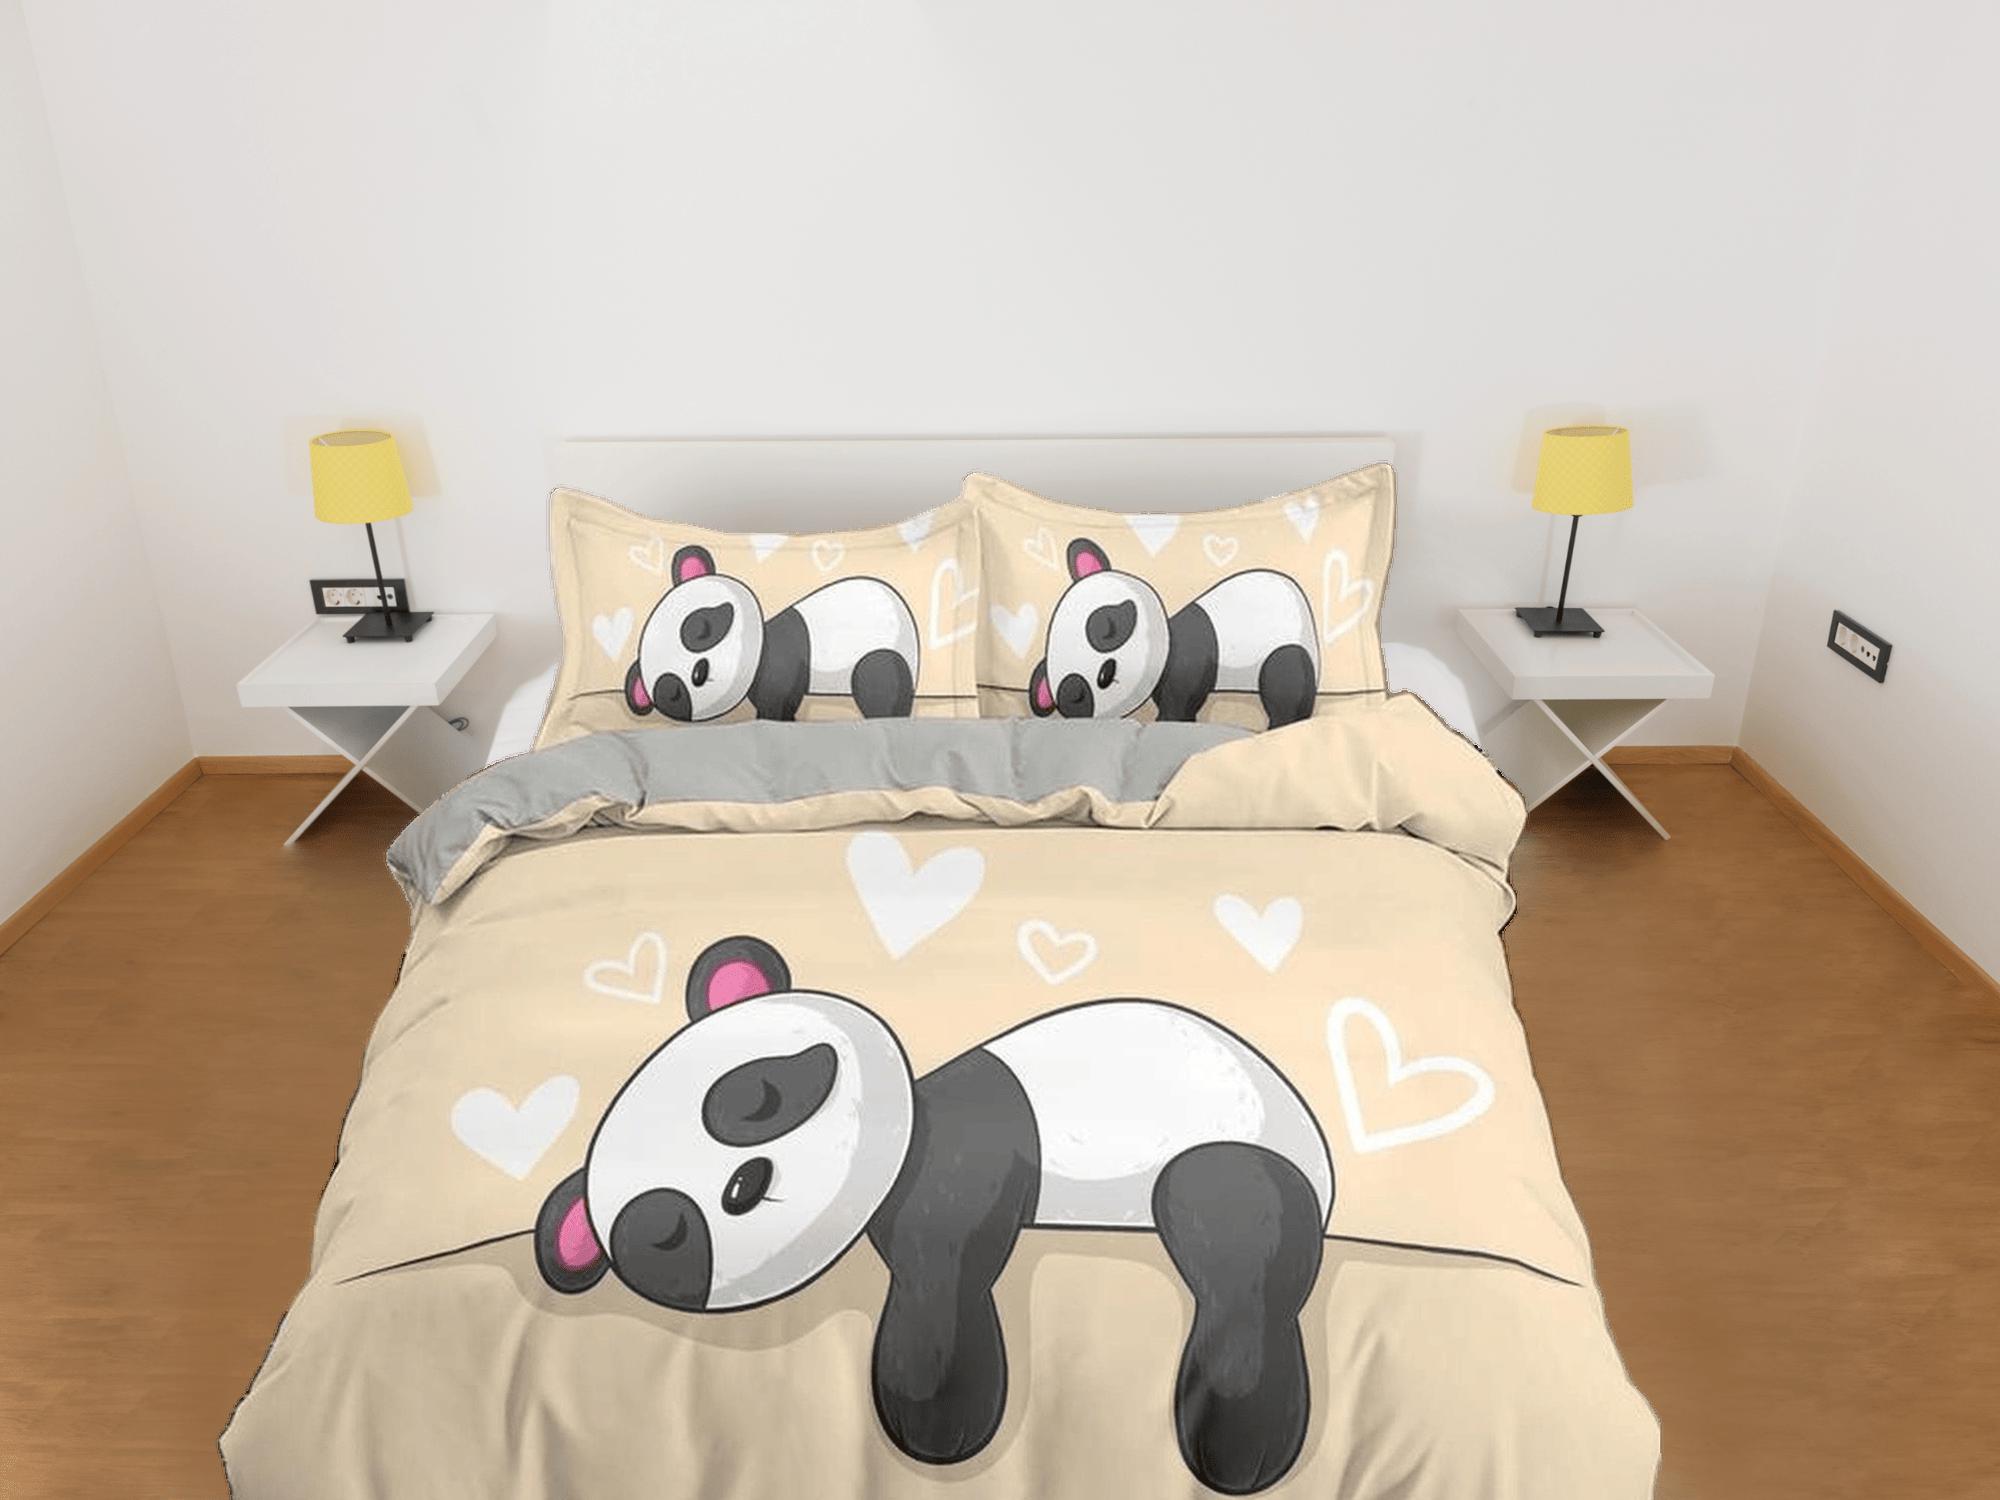 daintyduvet Sleeping panda yellow duvet cover kids, bedding set full, king, queen, dorm bedding, toddler bedding, aesthetic bedspread, panda lovers gift